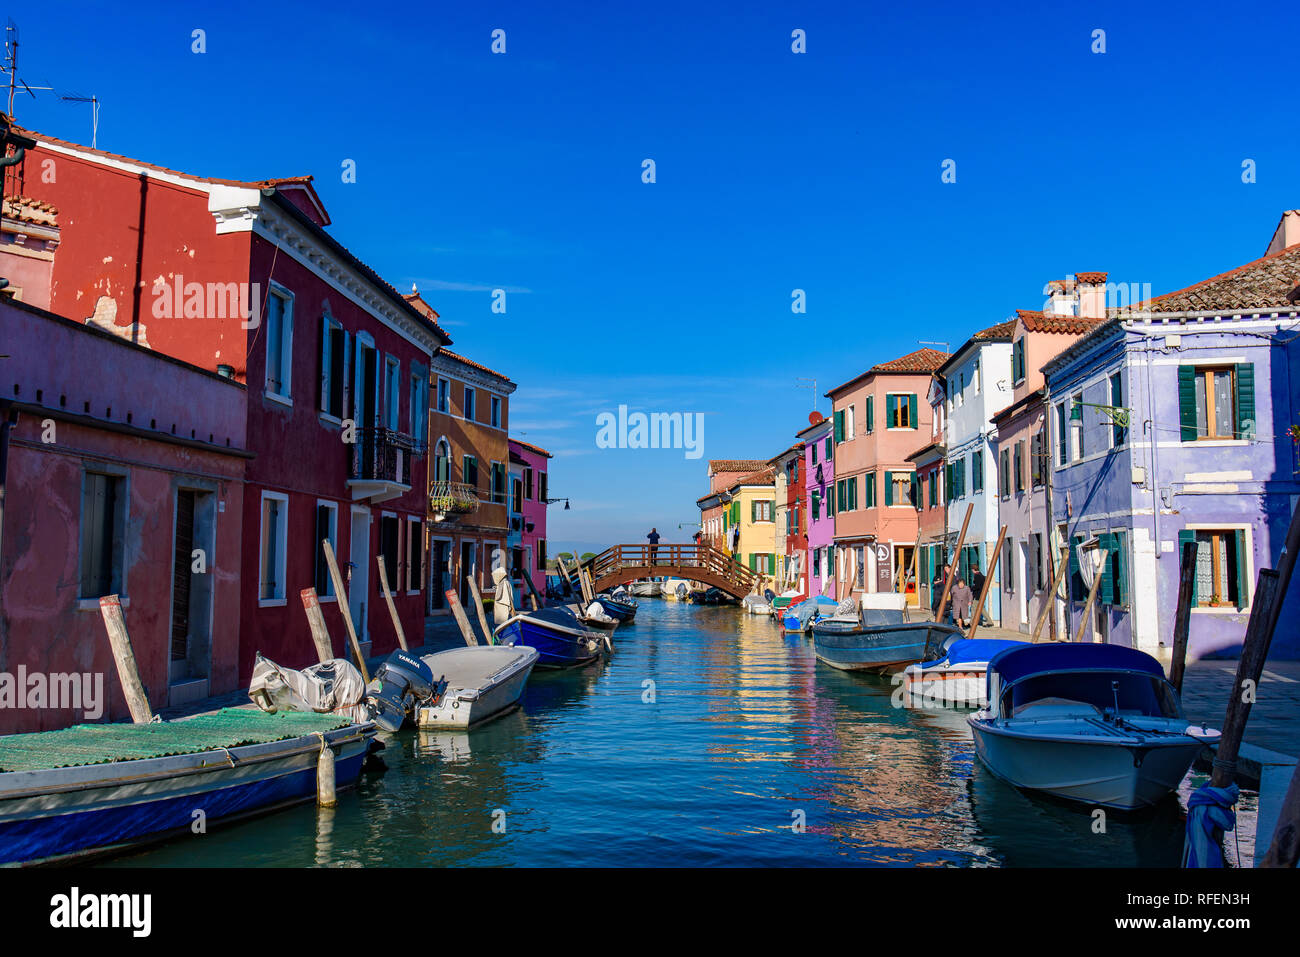 L'île de Burano, célèbre pour ses maisons de pêcheurs colorées, à Venise, Italie Banque D'Images